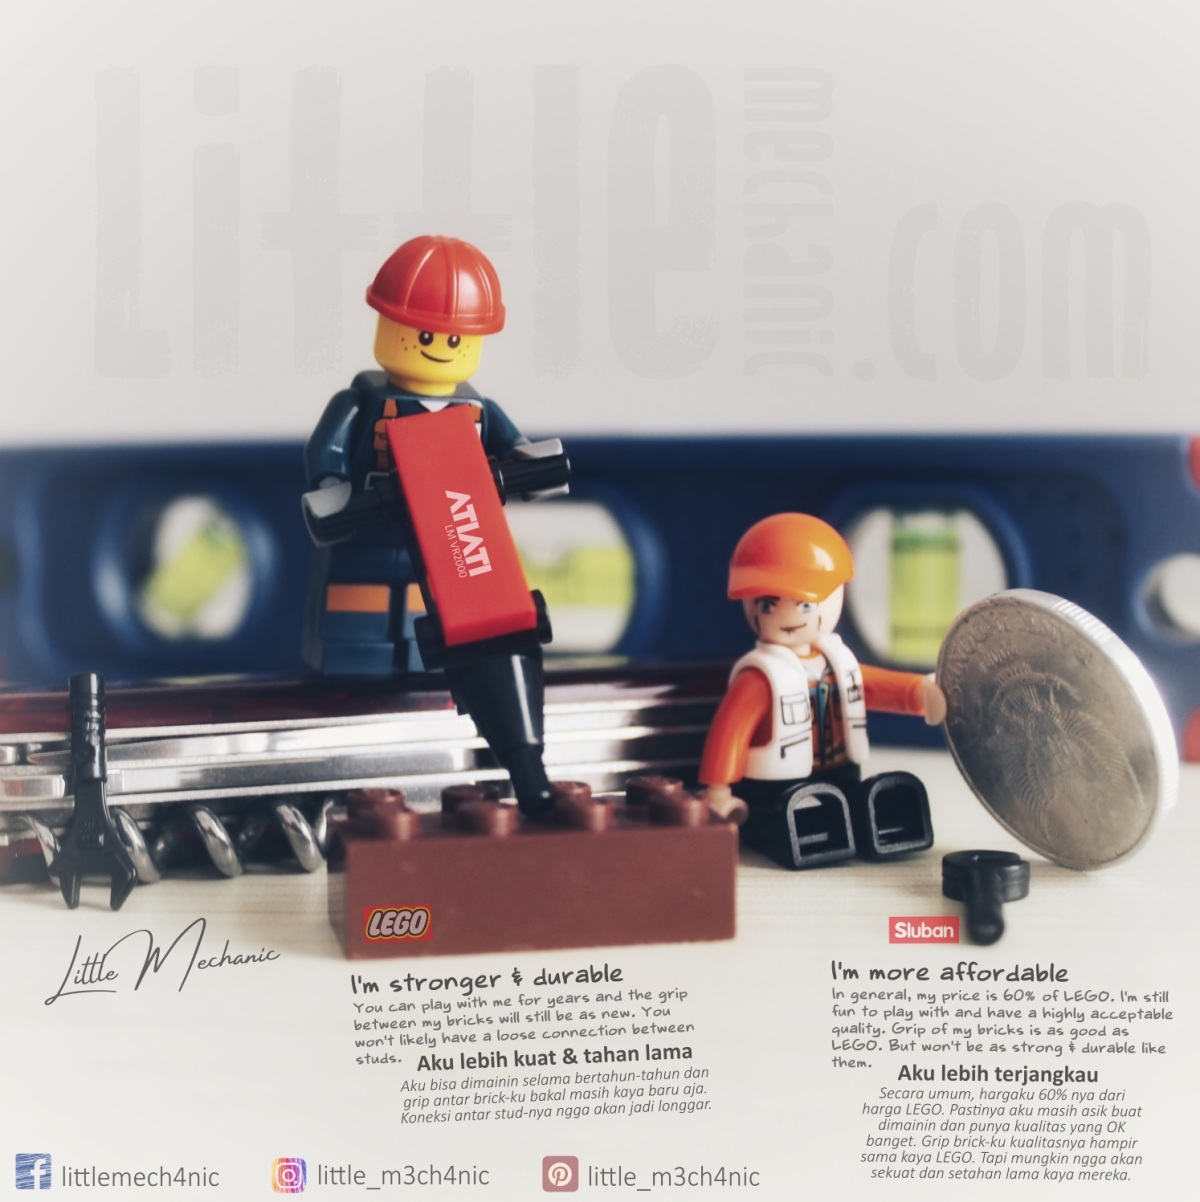 Photo of Sluban Brick and Lego minifigures. Little mechanic.